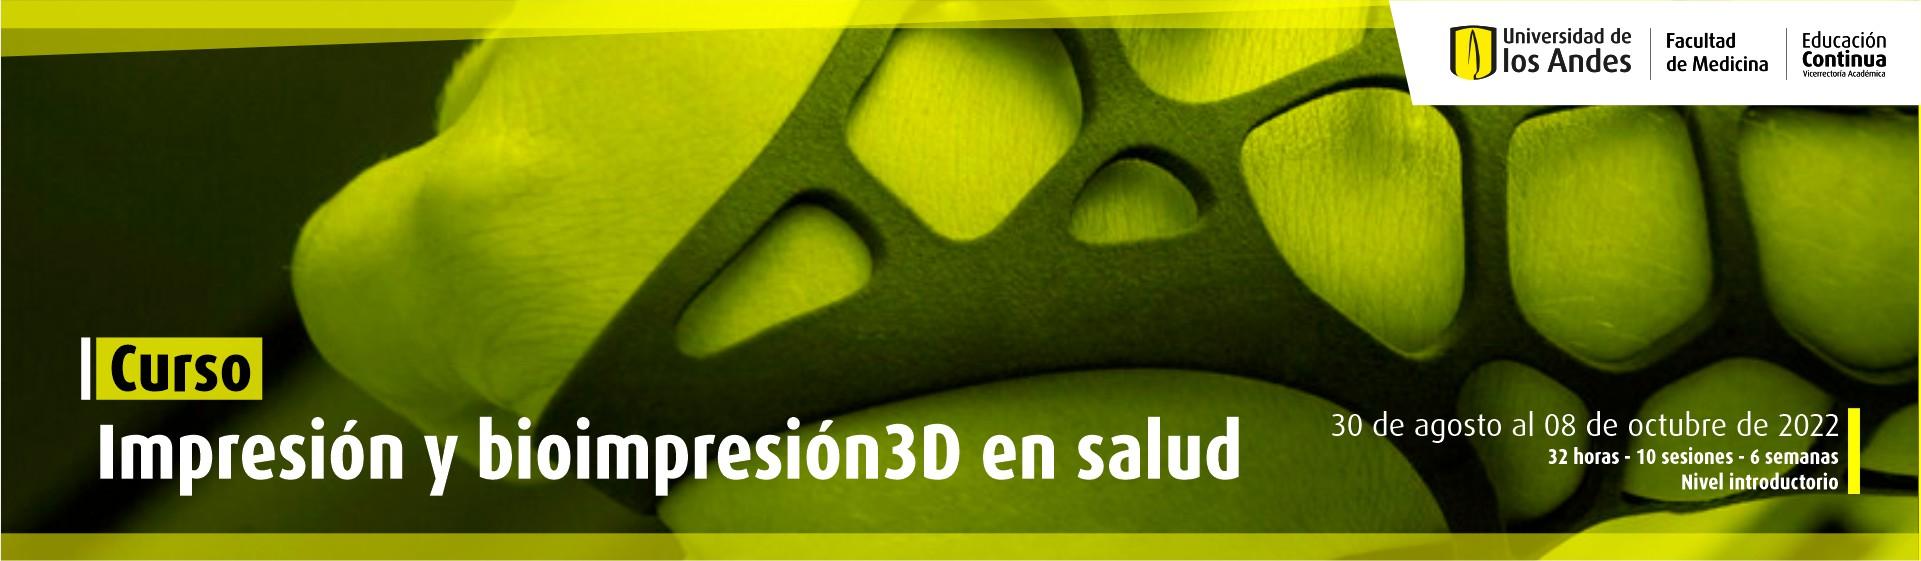 Impresión y bioimpresión 3D en salud